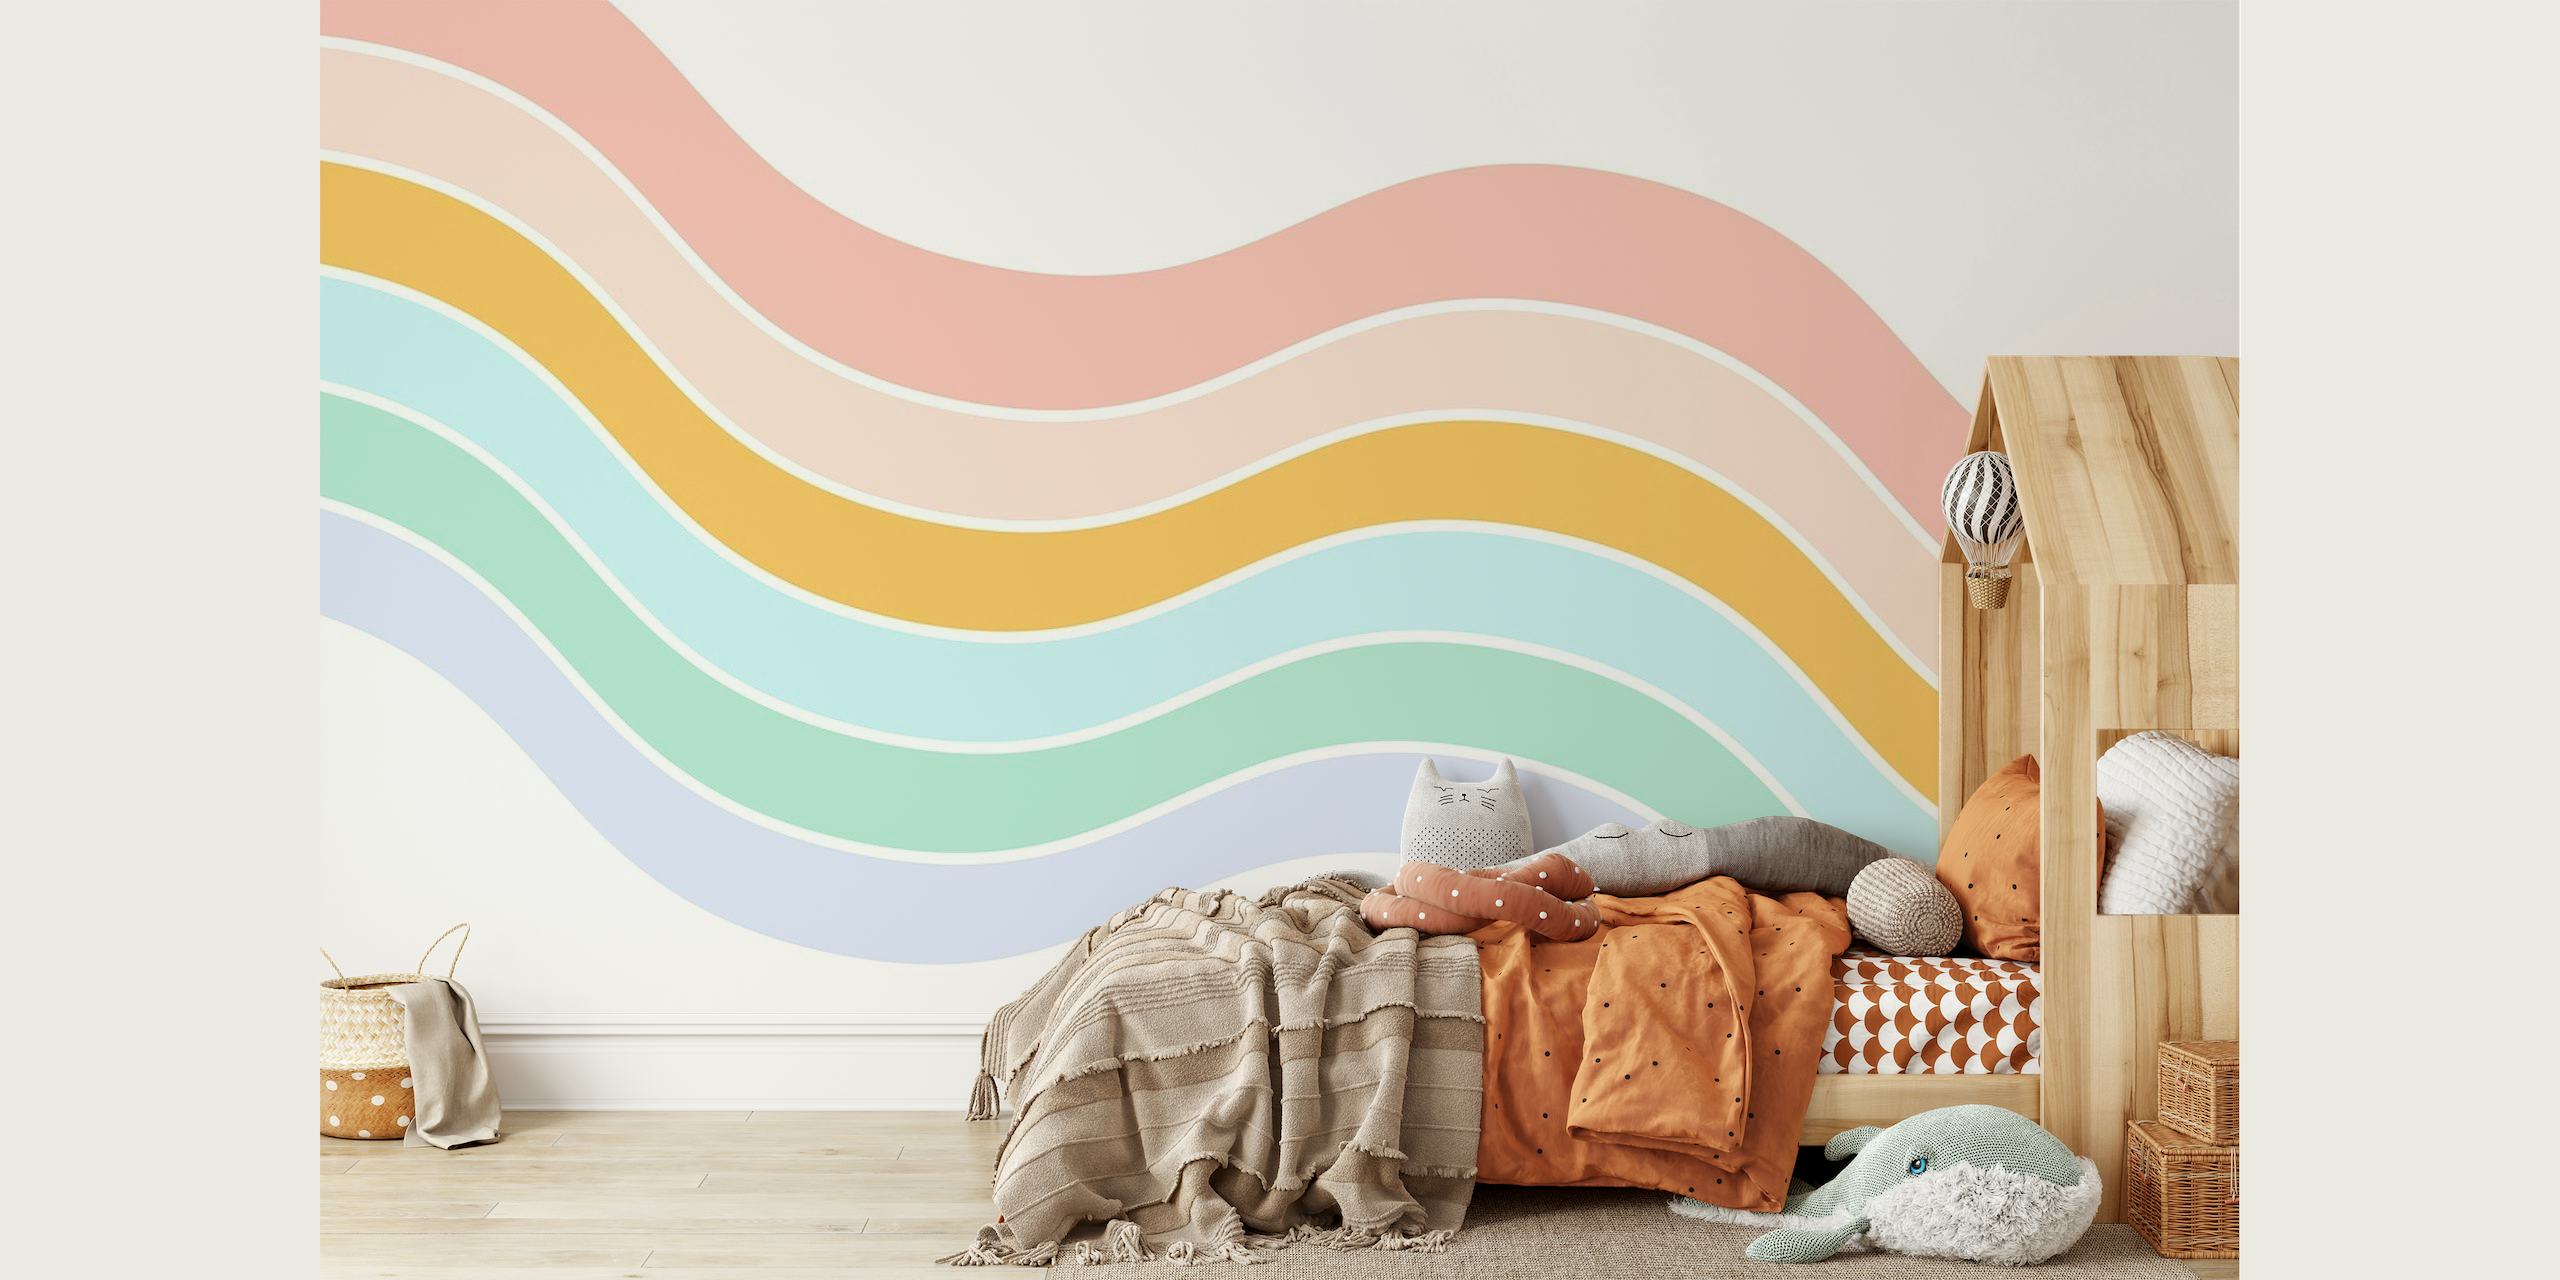 Peinture murale abstraite de vagues de couleurs pastel créant une esthétique apaisante